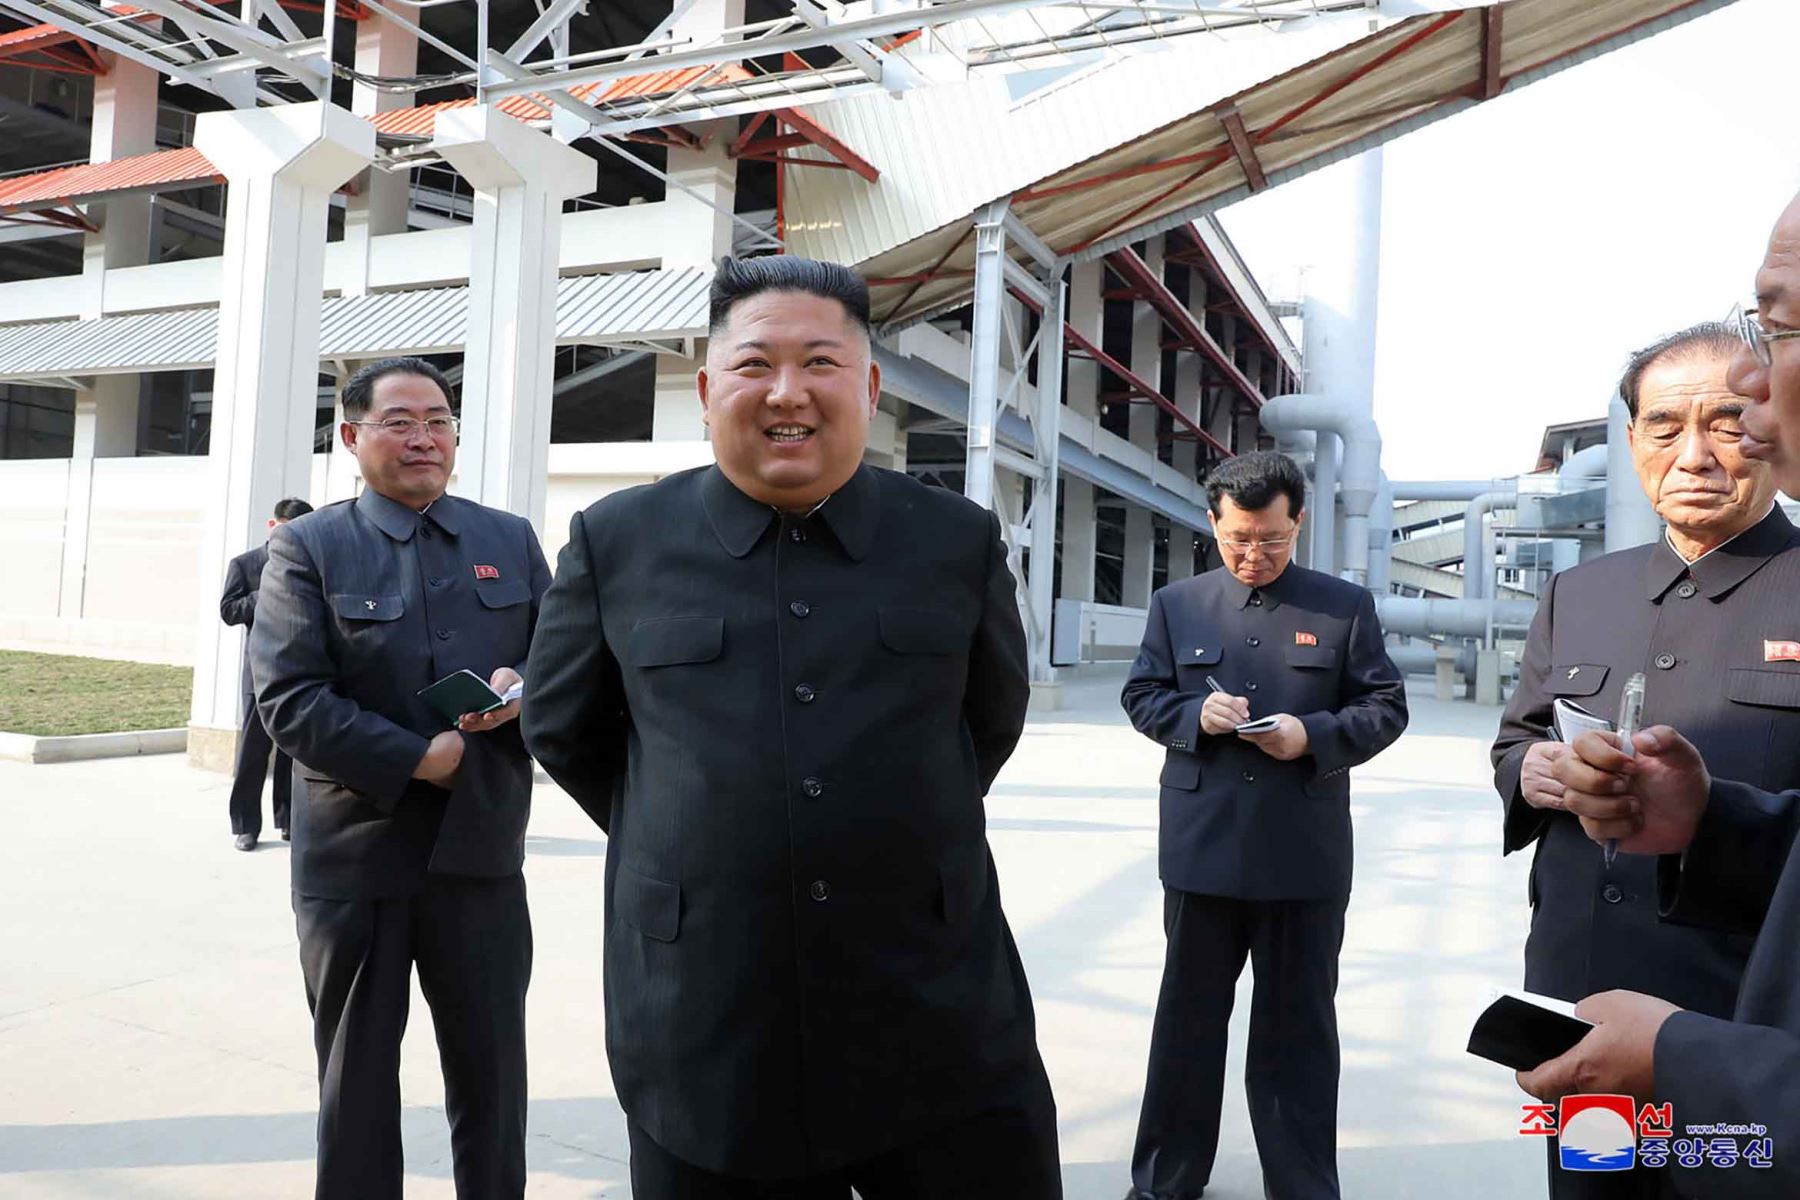 La Agencia de Noticias Central Coreana (KCNA) oficial de rea, el 2 de mayo de 2020, muestra al líder norcoreano Kim Jong Un (2nd R) visitando la fábrica de fertilizantes de fosfato Suchon en la provincia de Pyongan del Sur, Corea del Norte.
STR / KCNA VÍA KNS / AFP